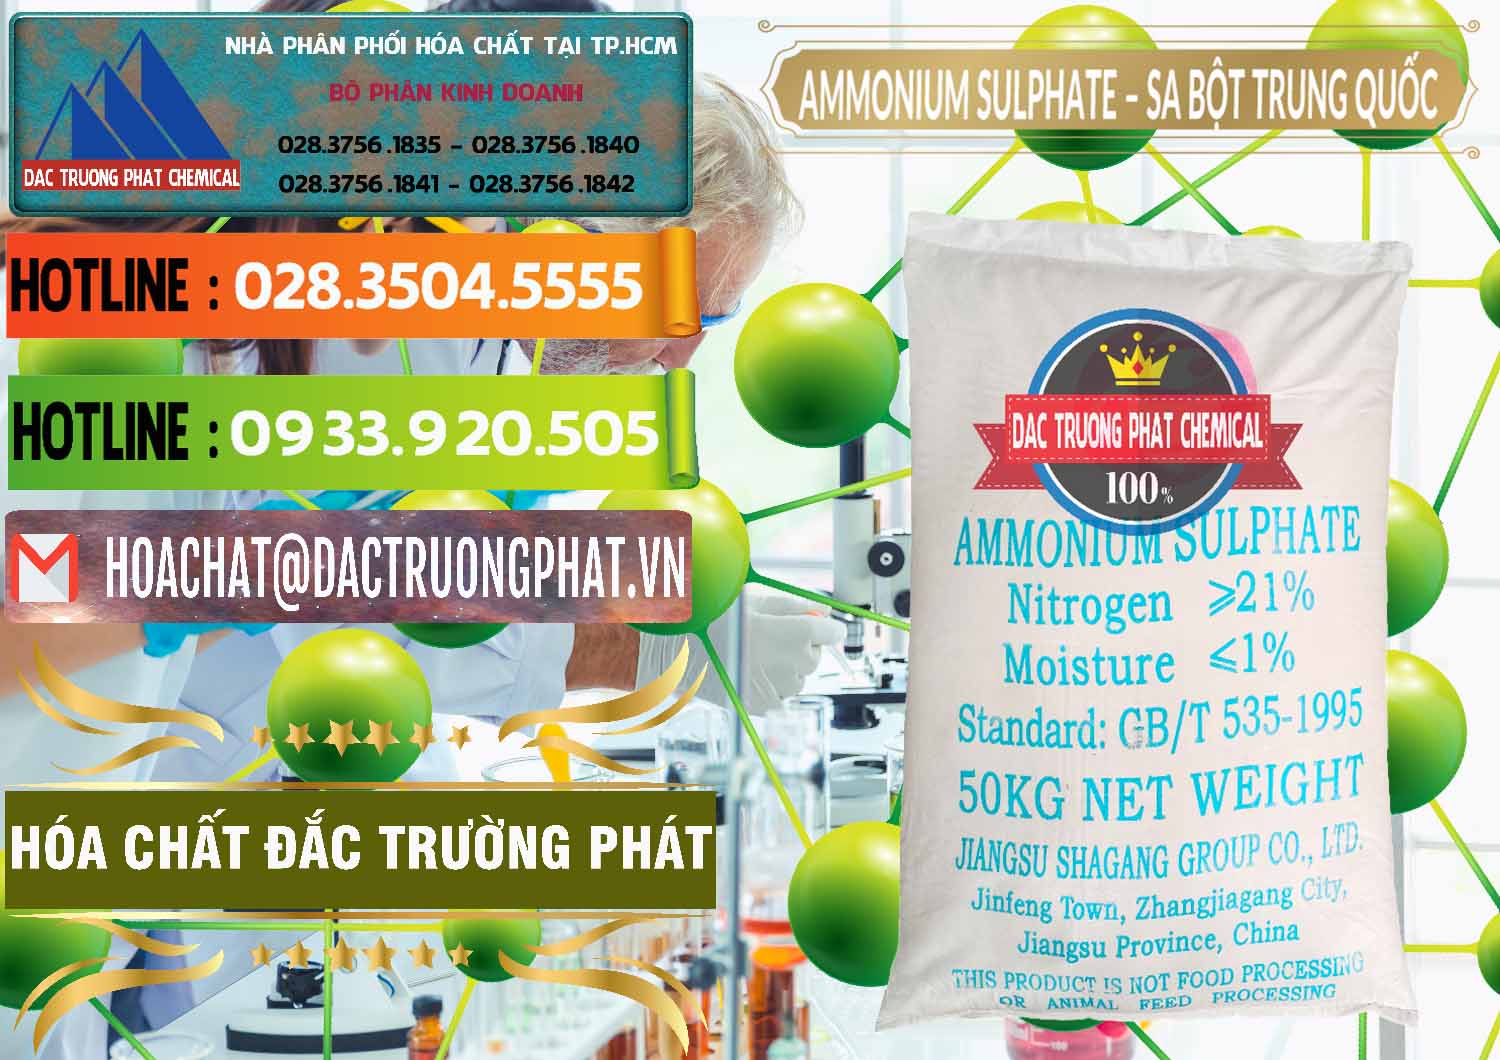 Chuyên kinh doanh & bán Ammonium Sulphate – Phân Sa Trung Quốc China - 0024 - Cty cung cấp - phân phối hóa chất tại TP.HCM - cungcaphoachat.com.vn